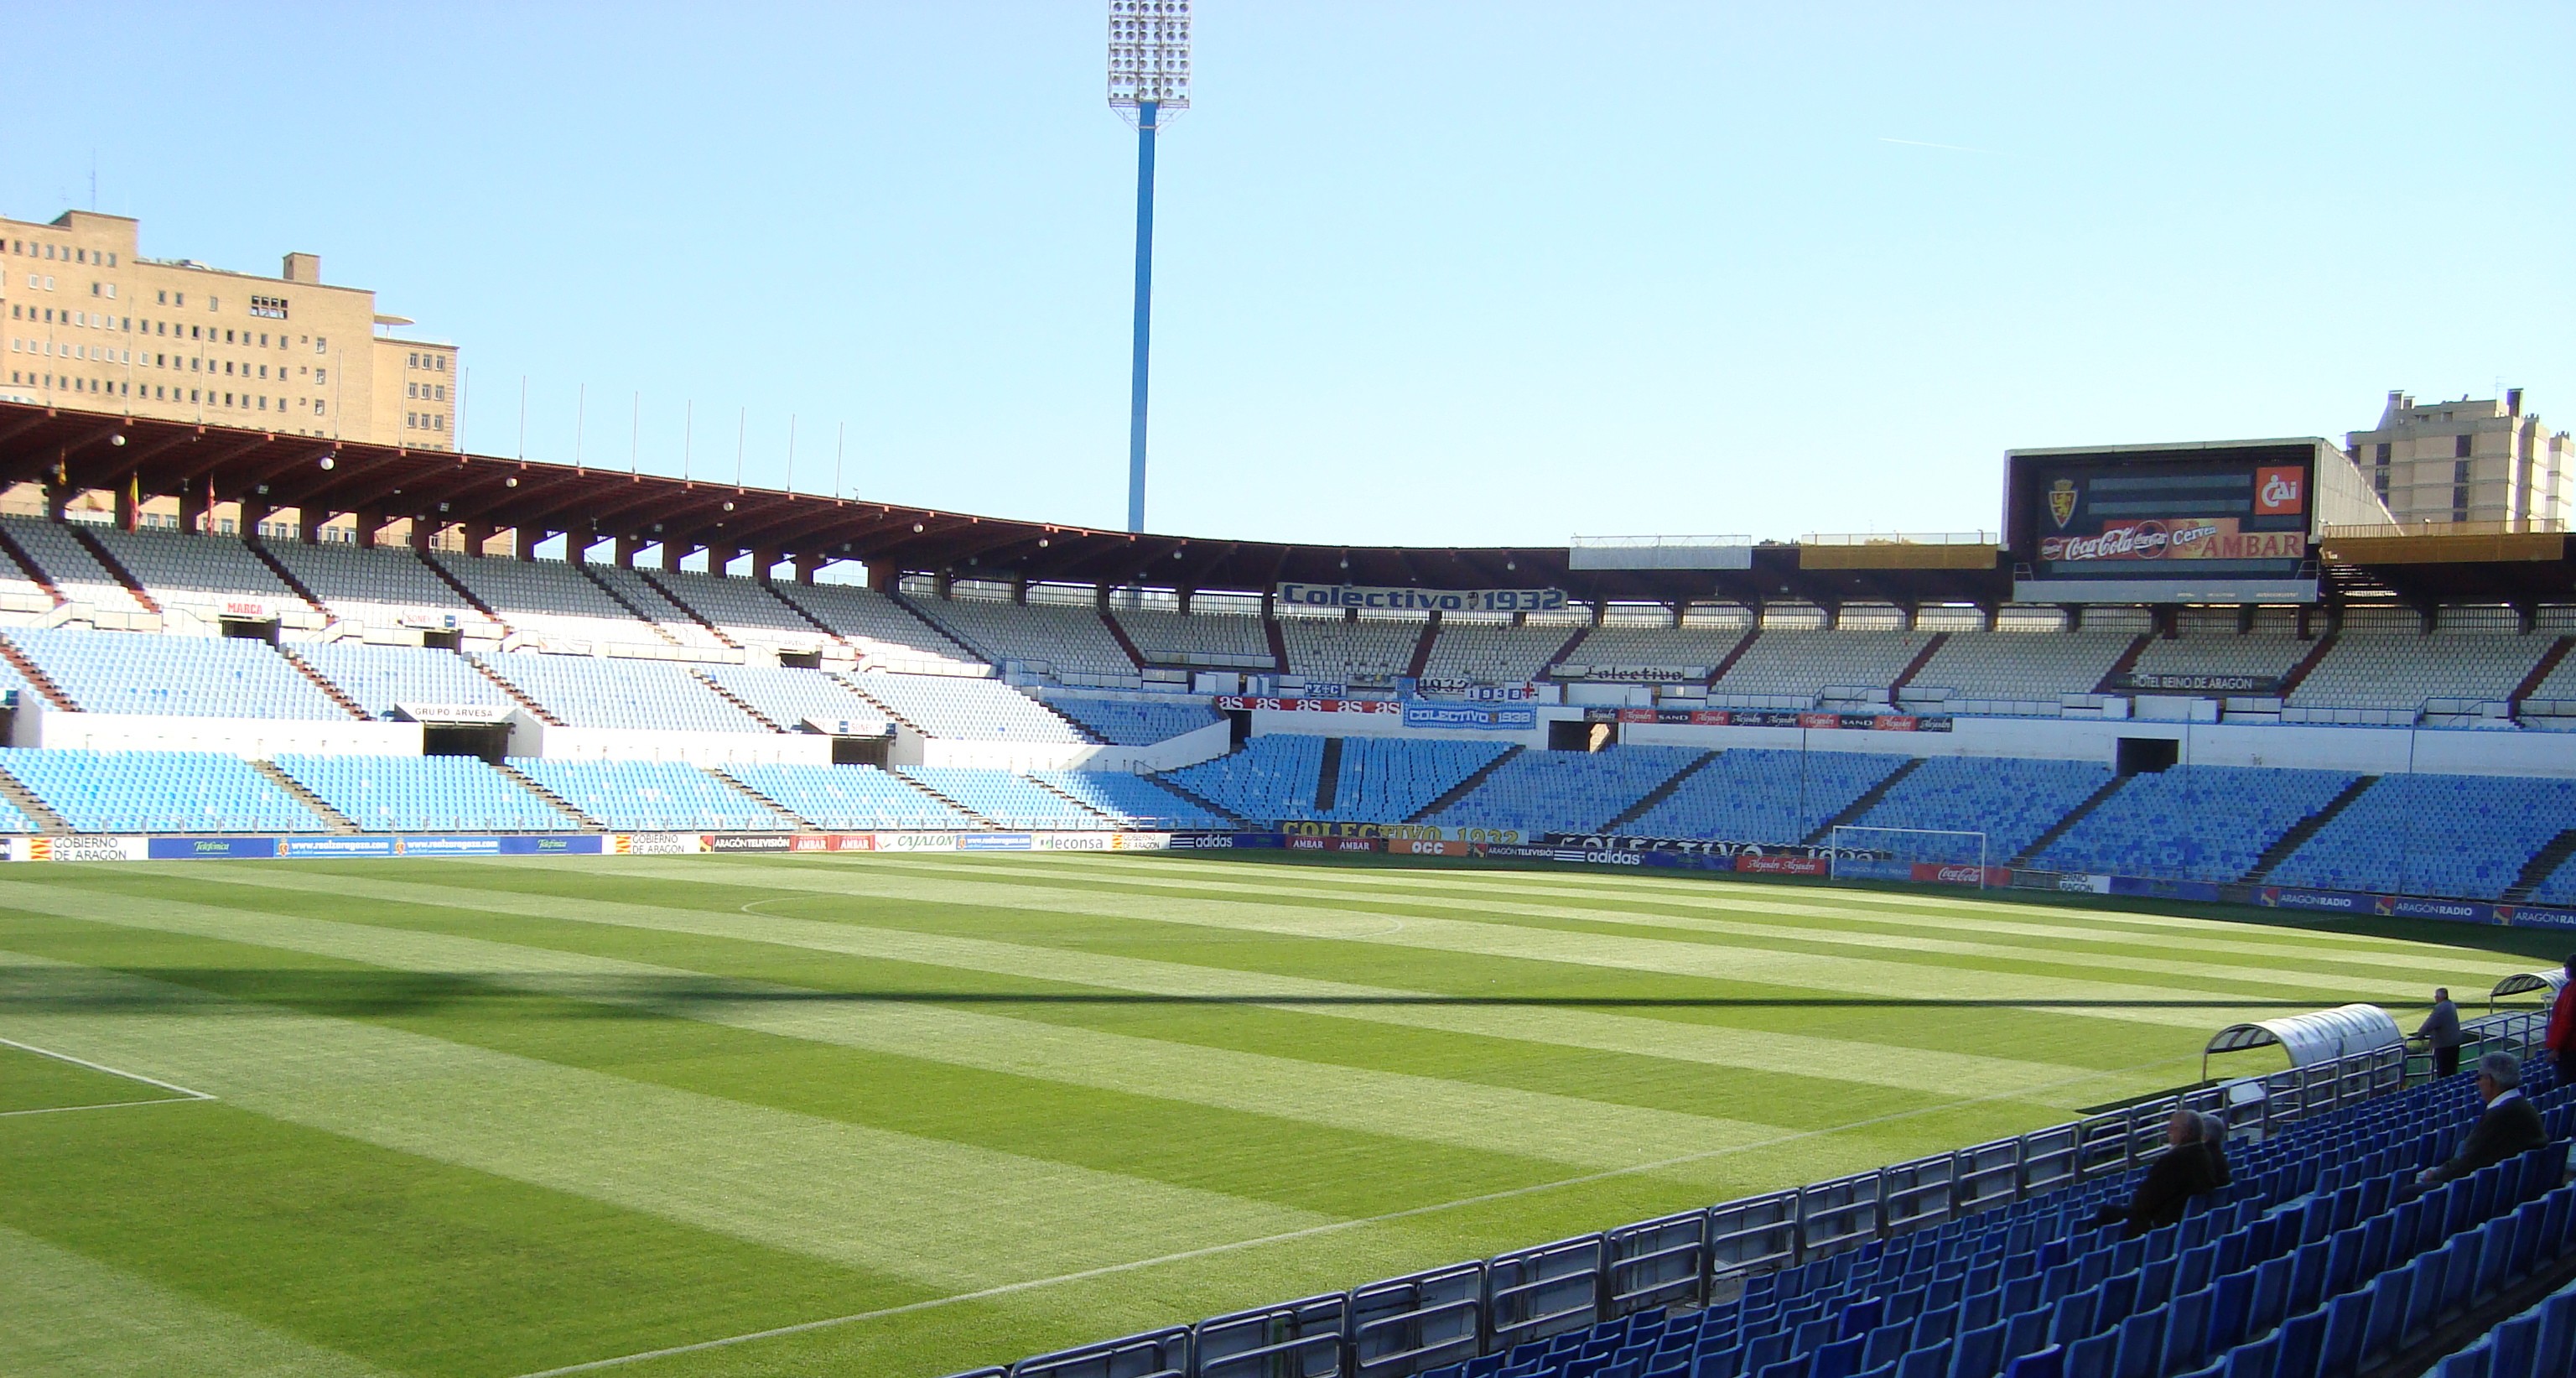 La Romareda Stadium Guide Zaragoza | El Centrocampista3072 x 1643